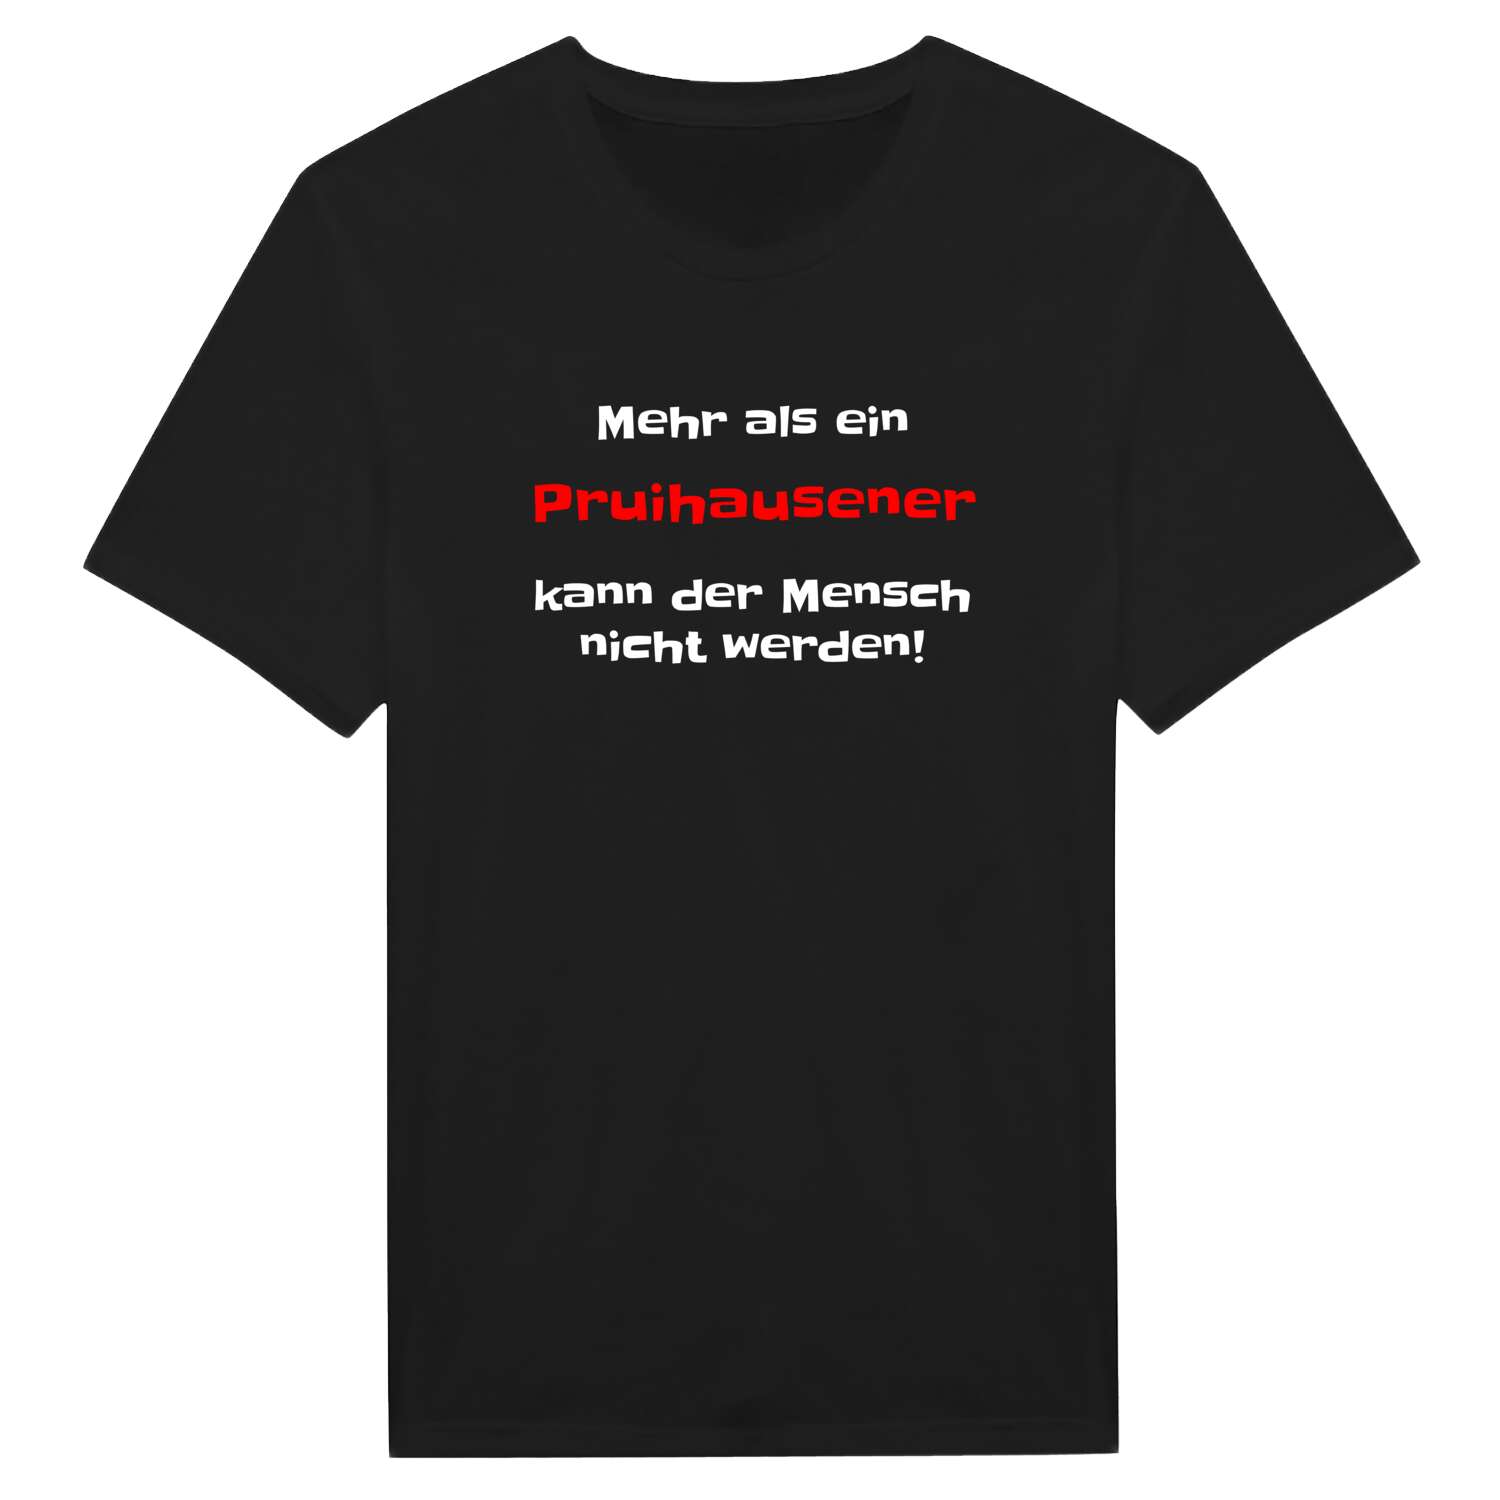 Pruihausen T-Shirt »Mehr als ein«